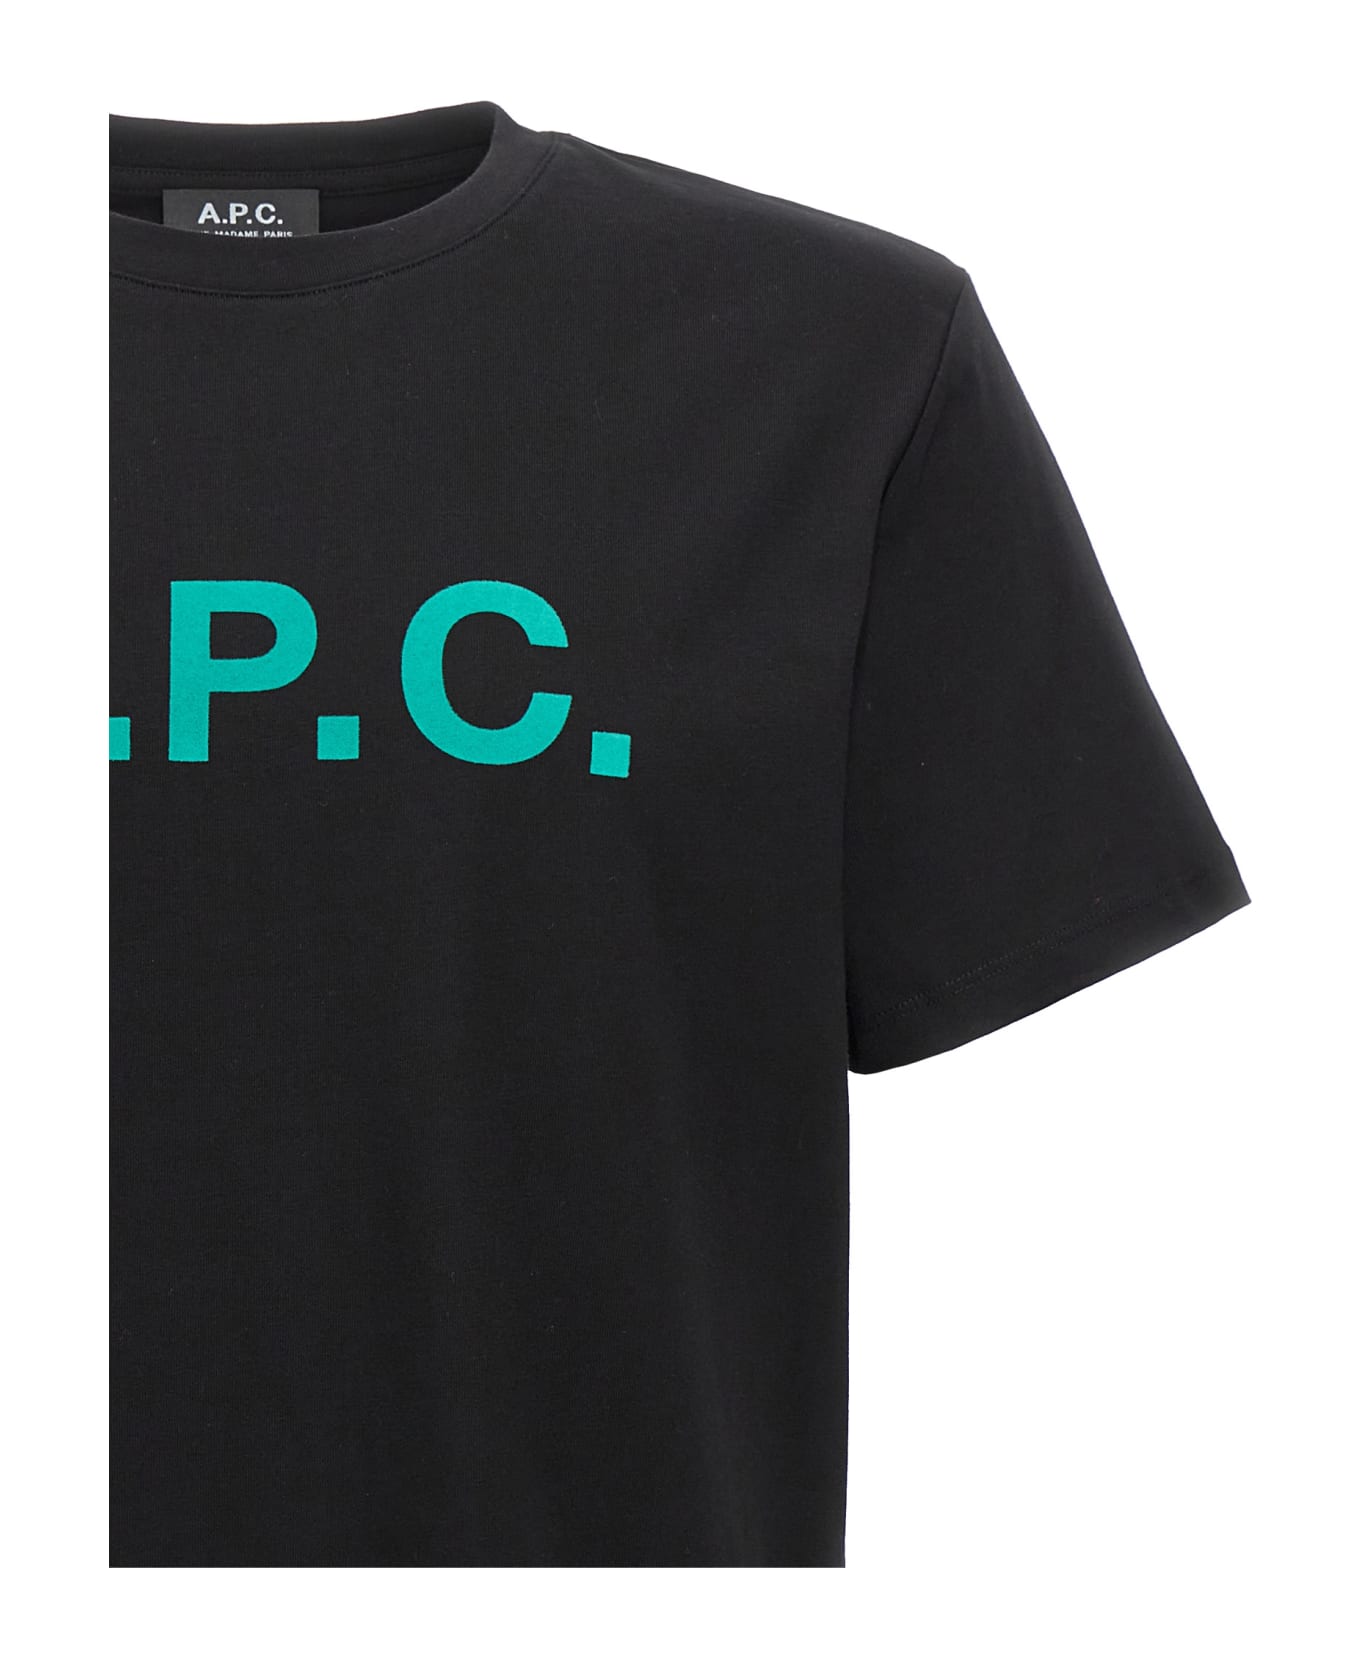 A.P.C. Vpc Logo Printed T-shirt - Black